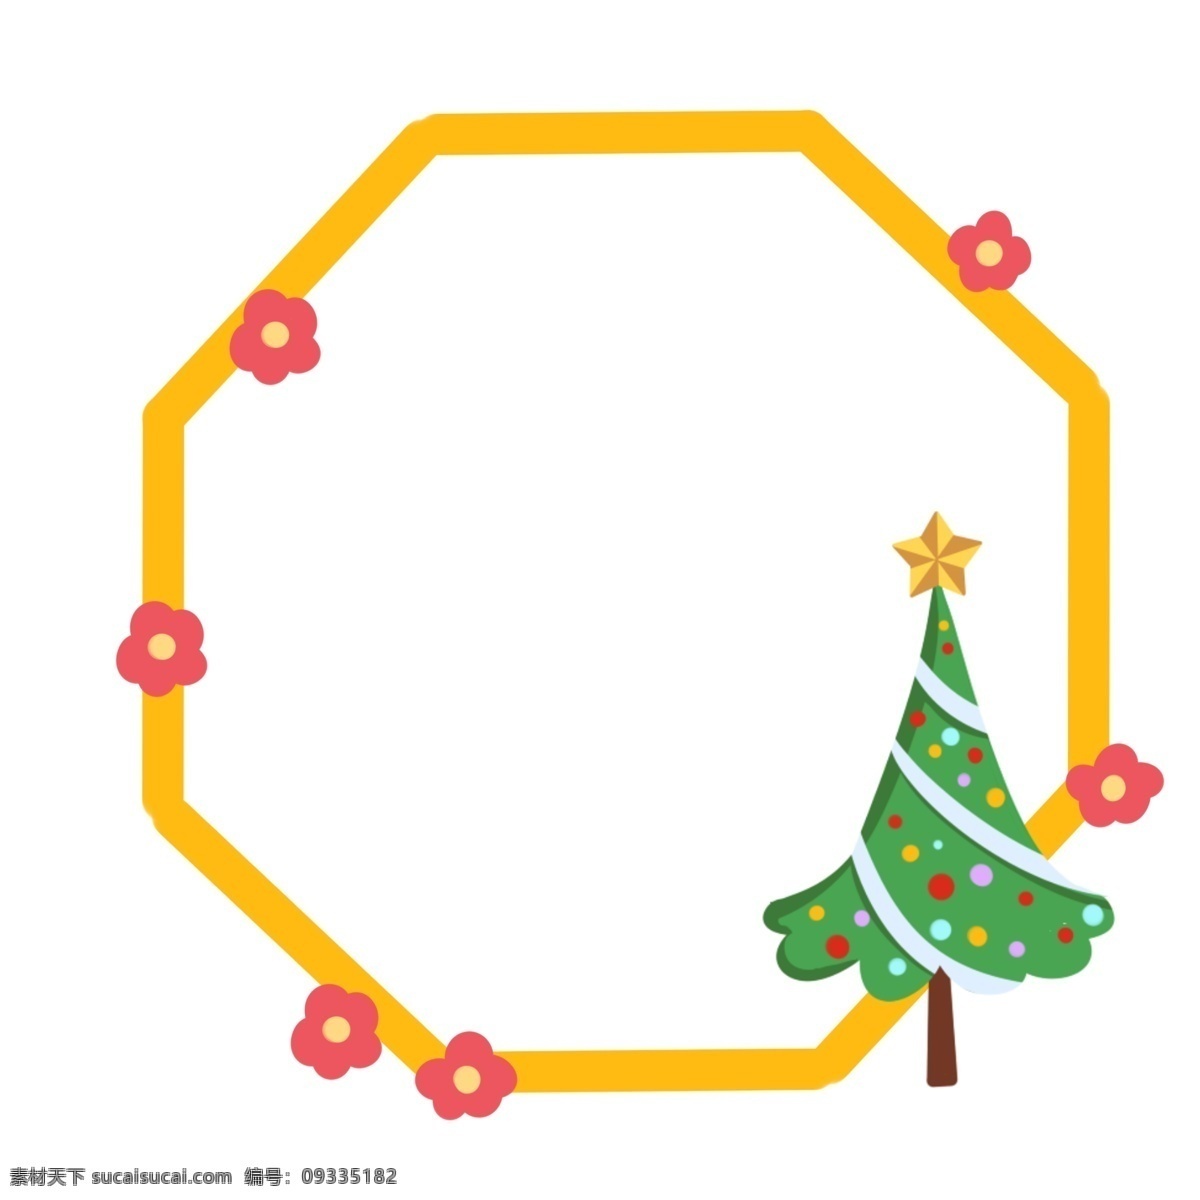 圣诞节 礼盒 边框 插画 绿色的礼盒 红色的蝴蝶结 圣诞球装饰 黄色的边框 创意边框